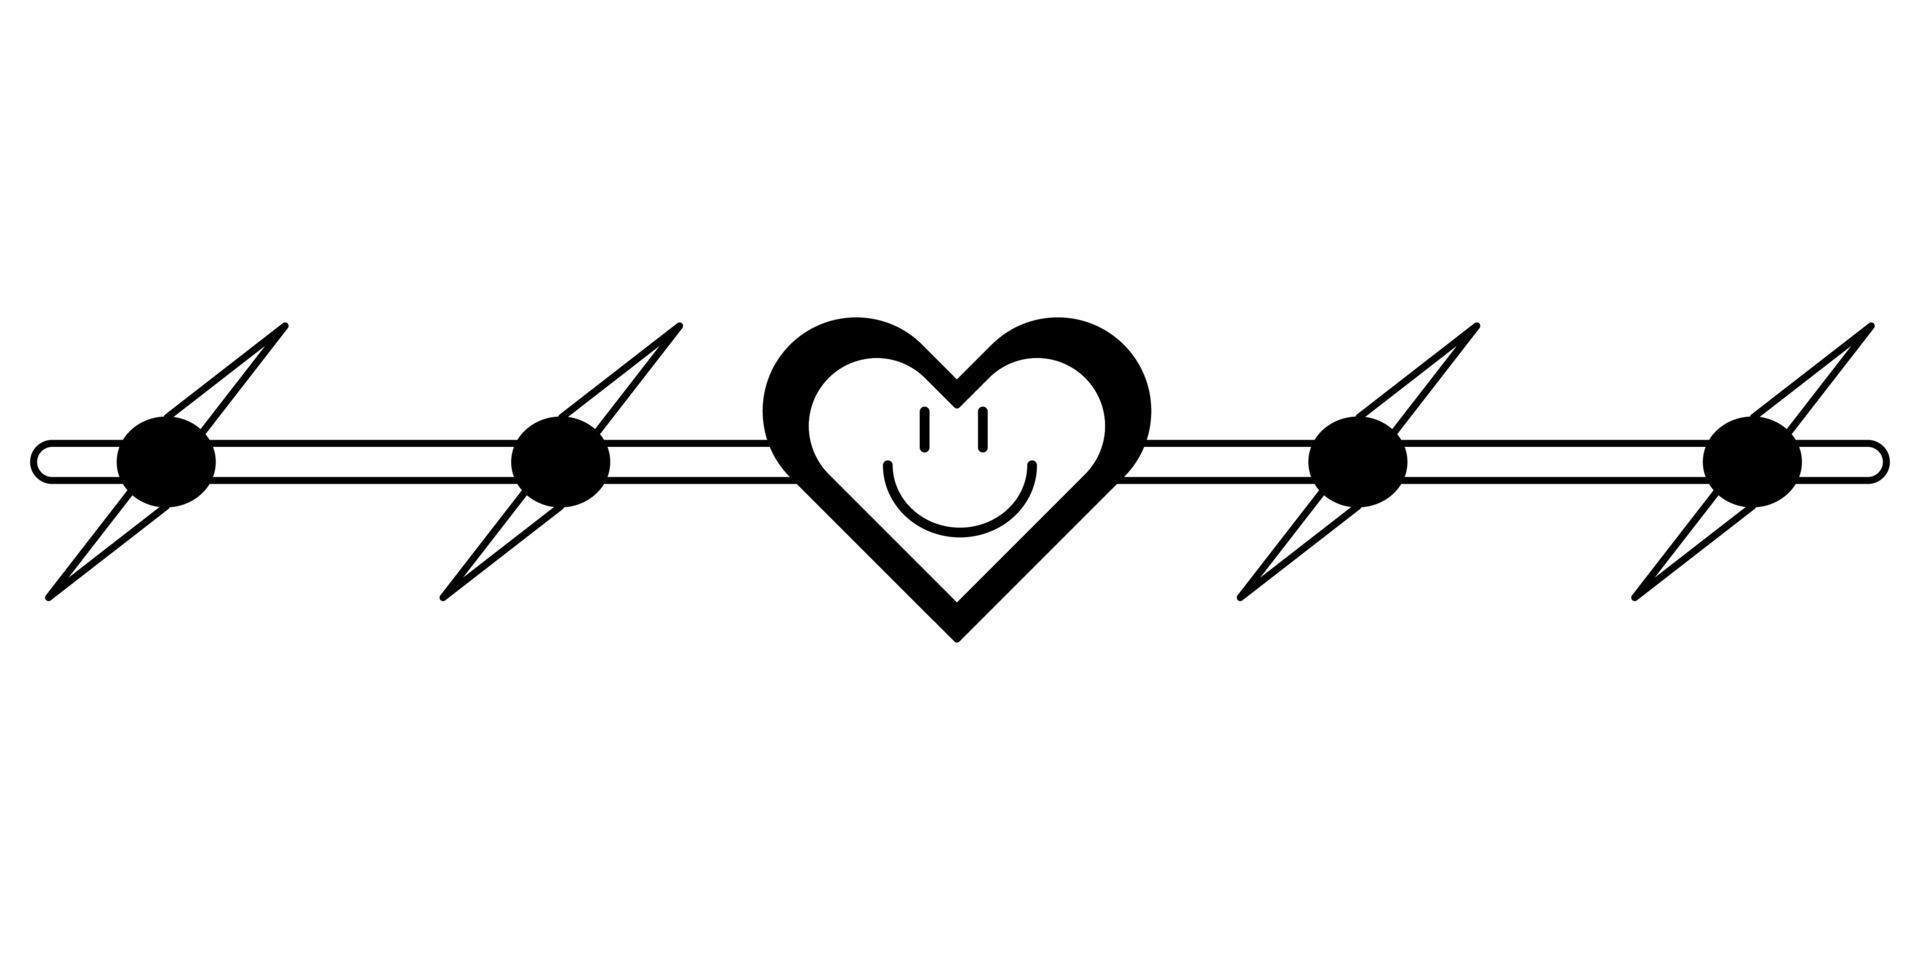 tatuaje de alambre de púas con un corazón al estilo de los años 90, 2000. ilustración de un solo objeto en blanco y negro. vector